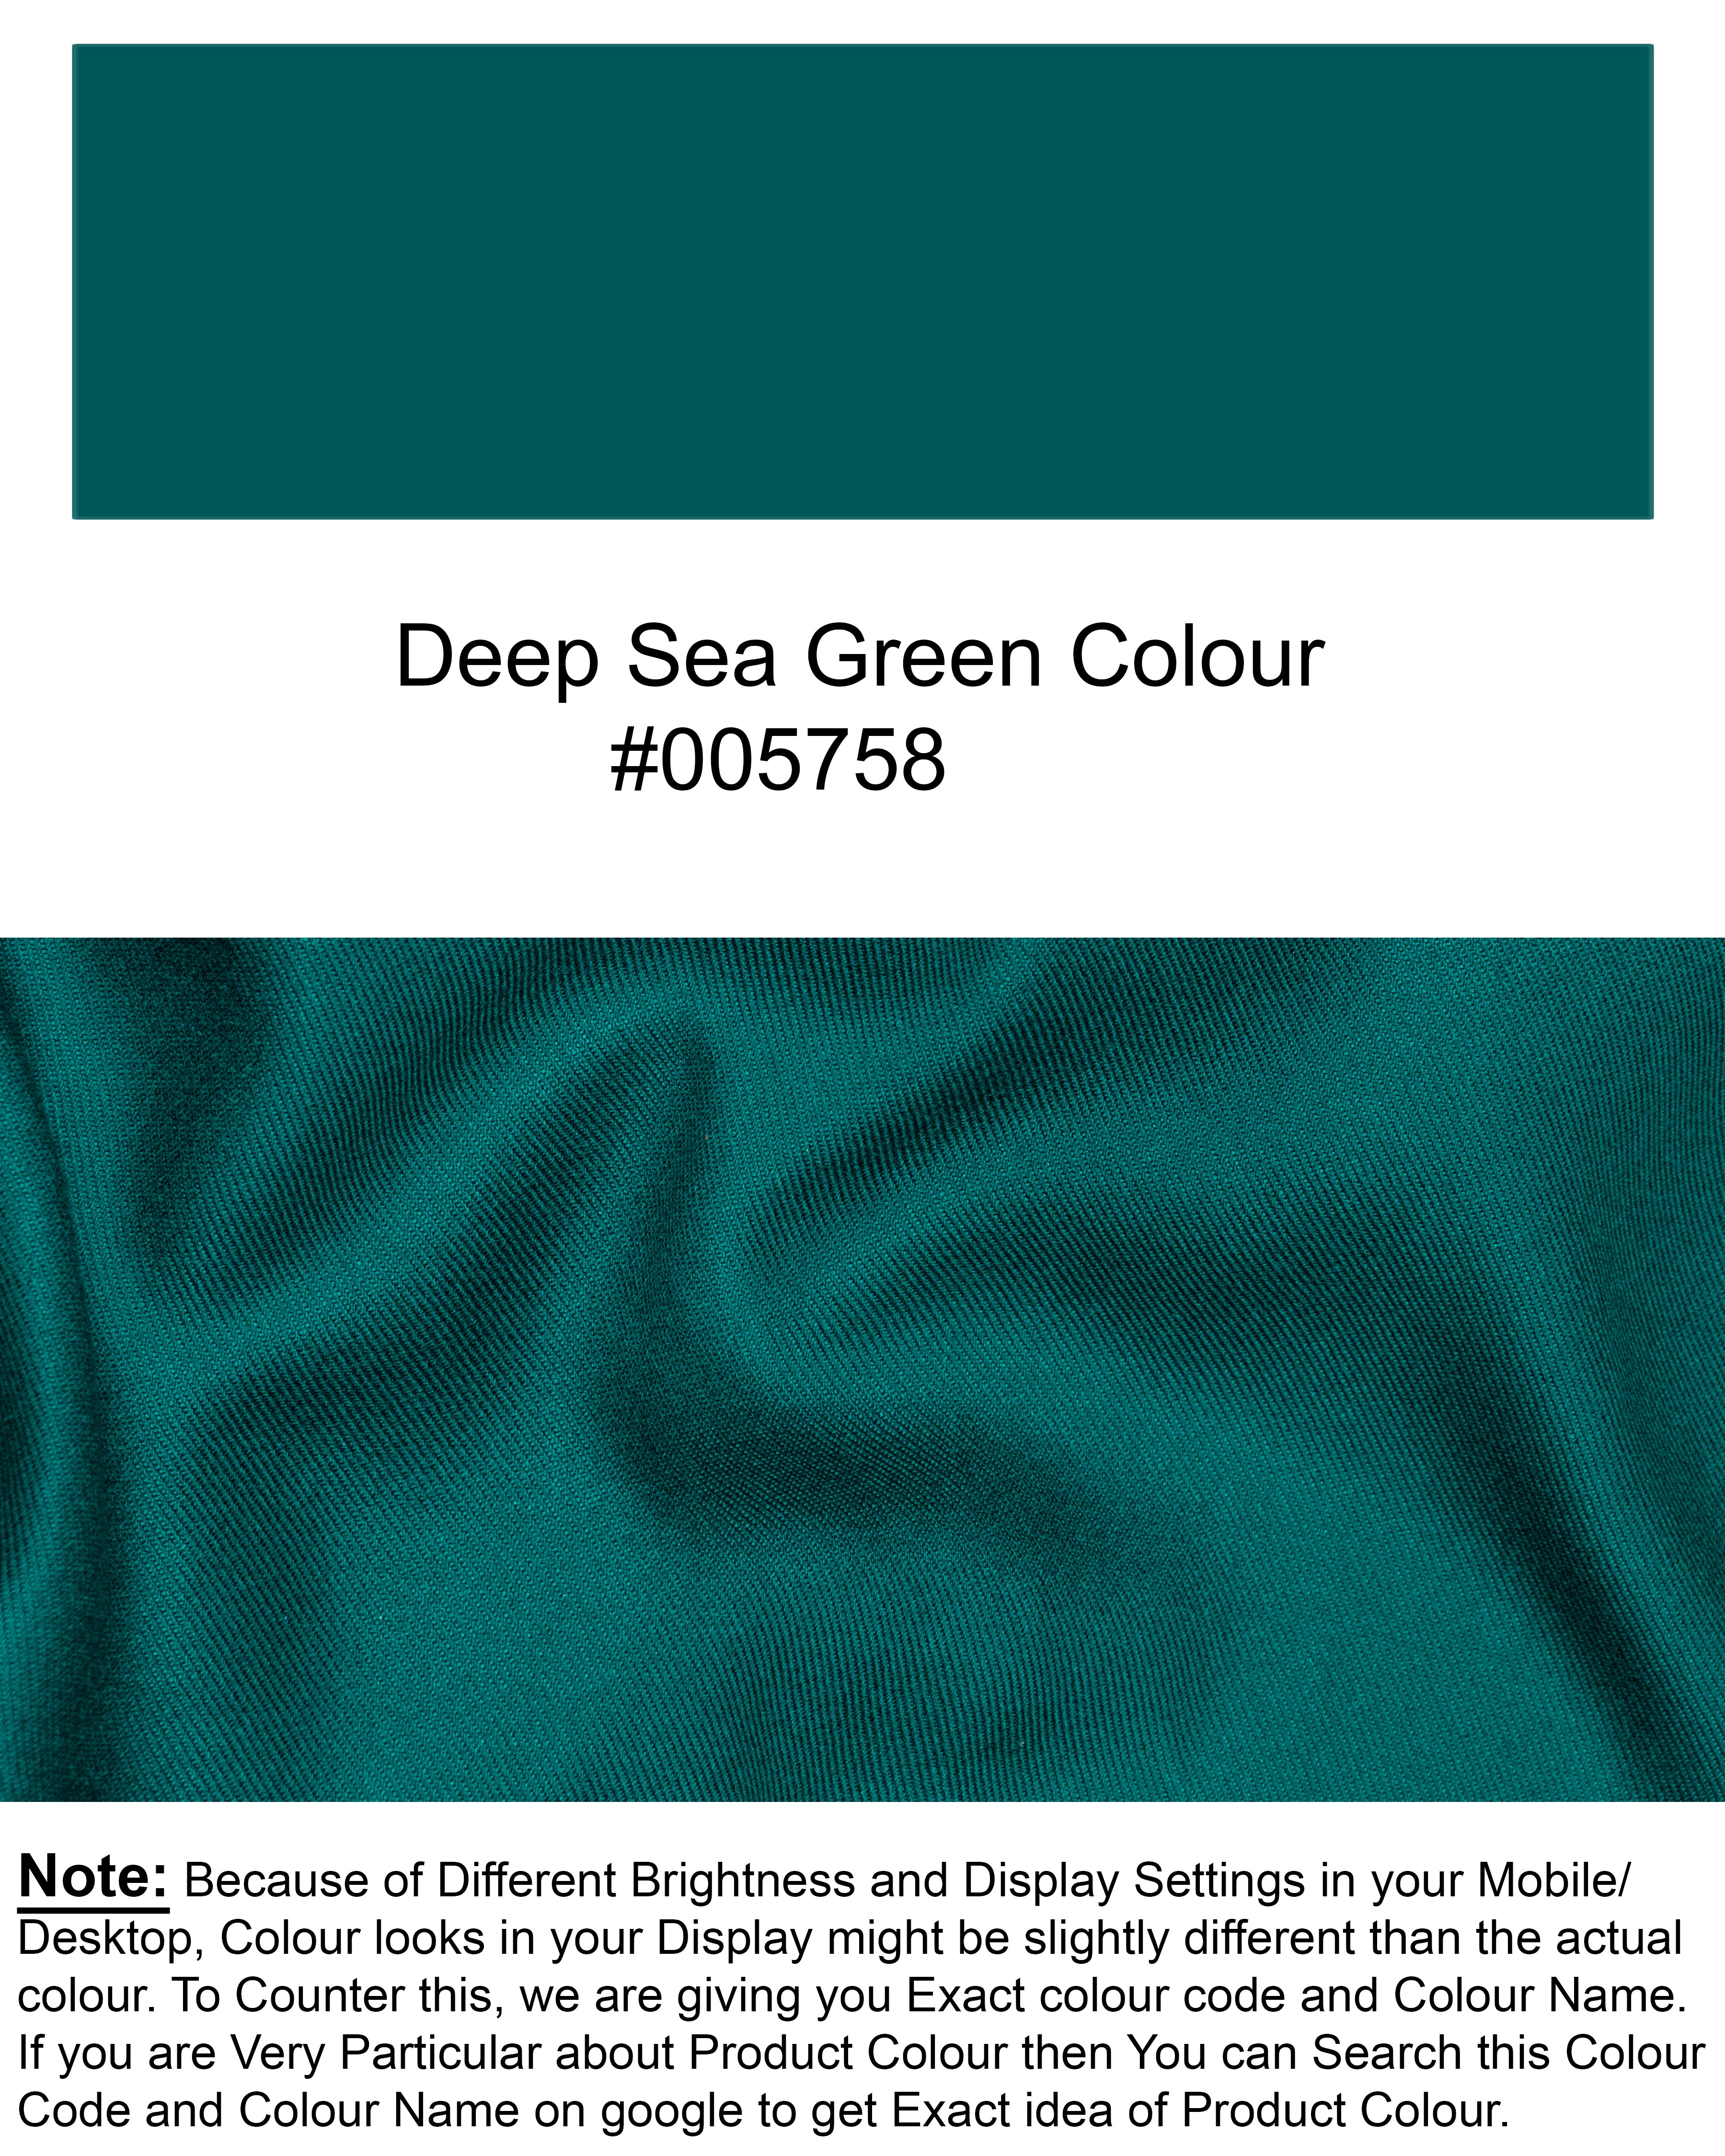 Deep Sea Green Premium Tencel Kurta Shirt 6612-KS-38, 6612-KS-H-38, 6612-KS-39, 6612-KS-H-39, 6612-KS-40, 6612-KS-H-40, 6612-KS-42, 6612-KS-H-42, 6612-KS-44, 6612-KS-H-44, 6612-KS-46, 6612-KS-H-46, 6612-KS-48, 6612-KS-H-48, 6612-KS-50, 6612-KS-H-50, 6612-KS-52, 6612-KS-H-52